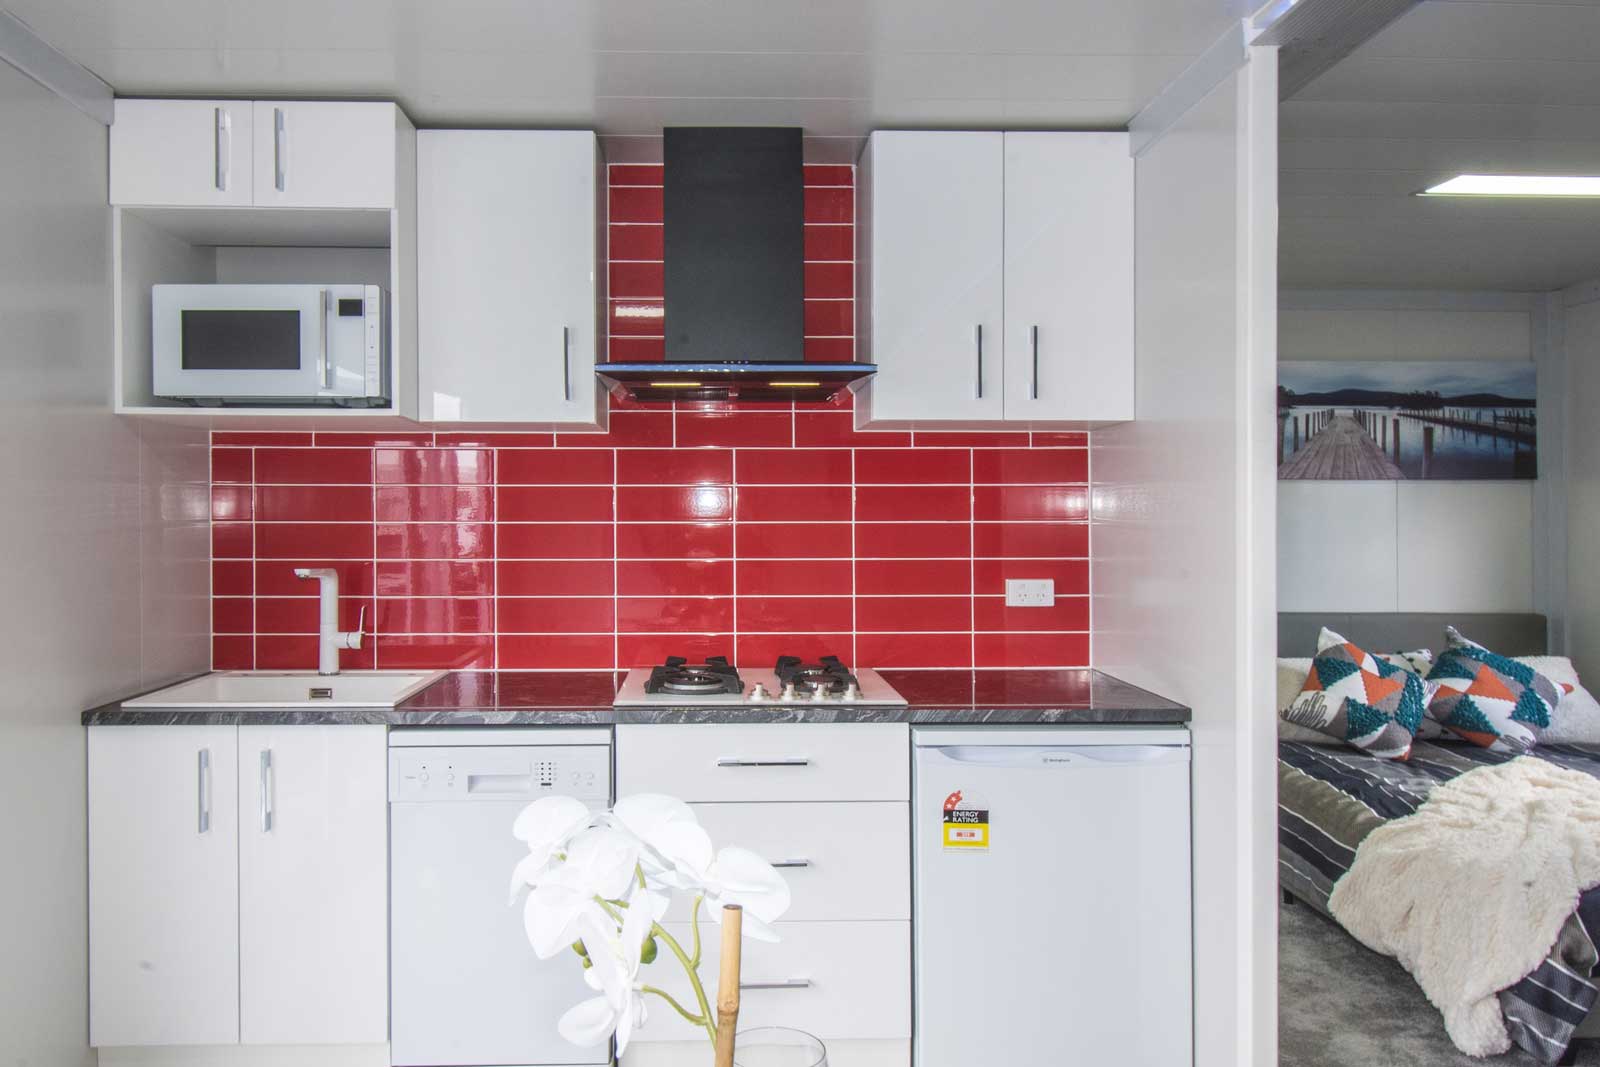 NZ cabin kitchen design